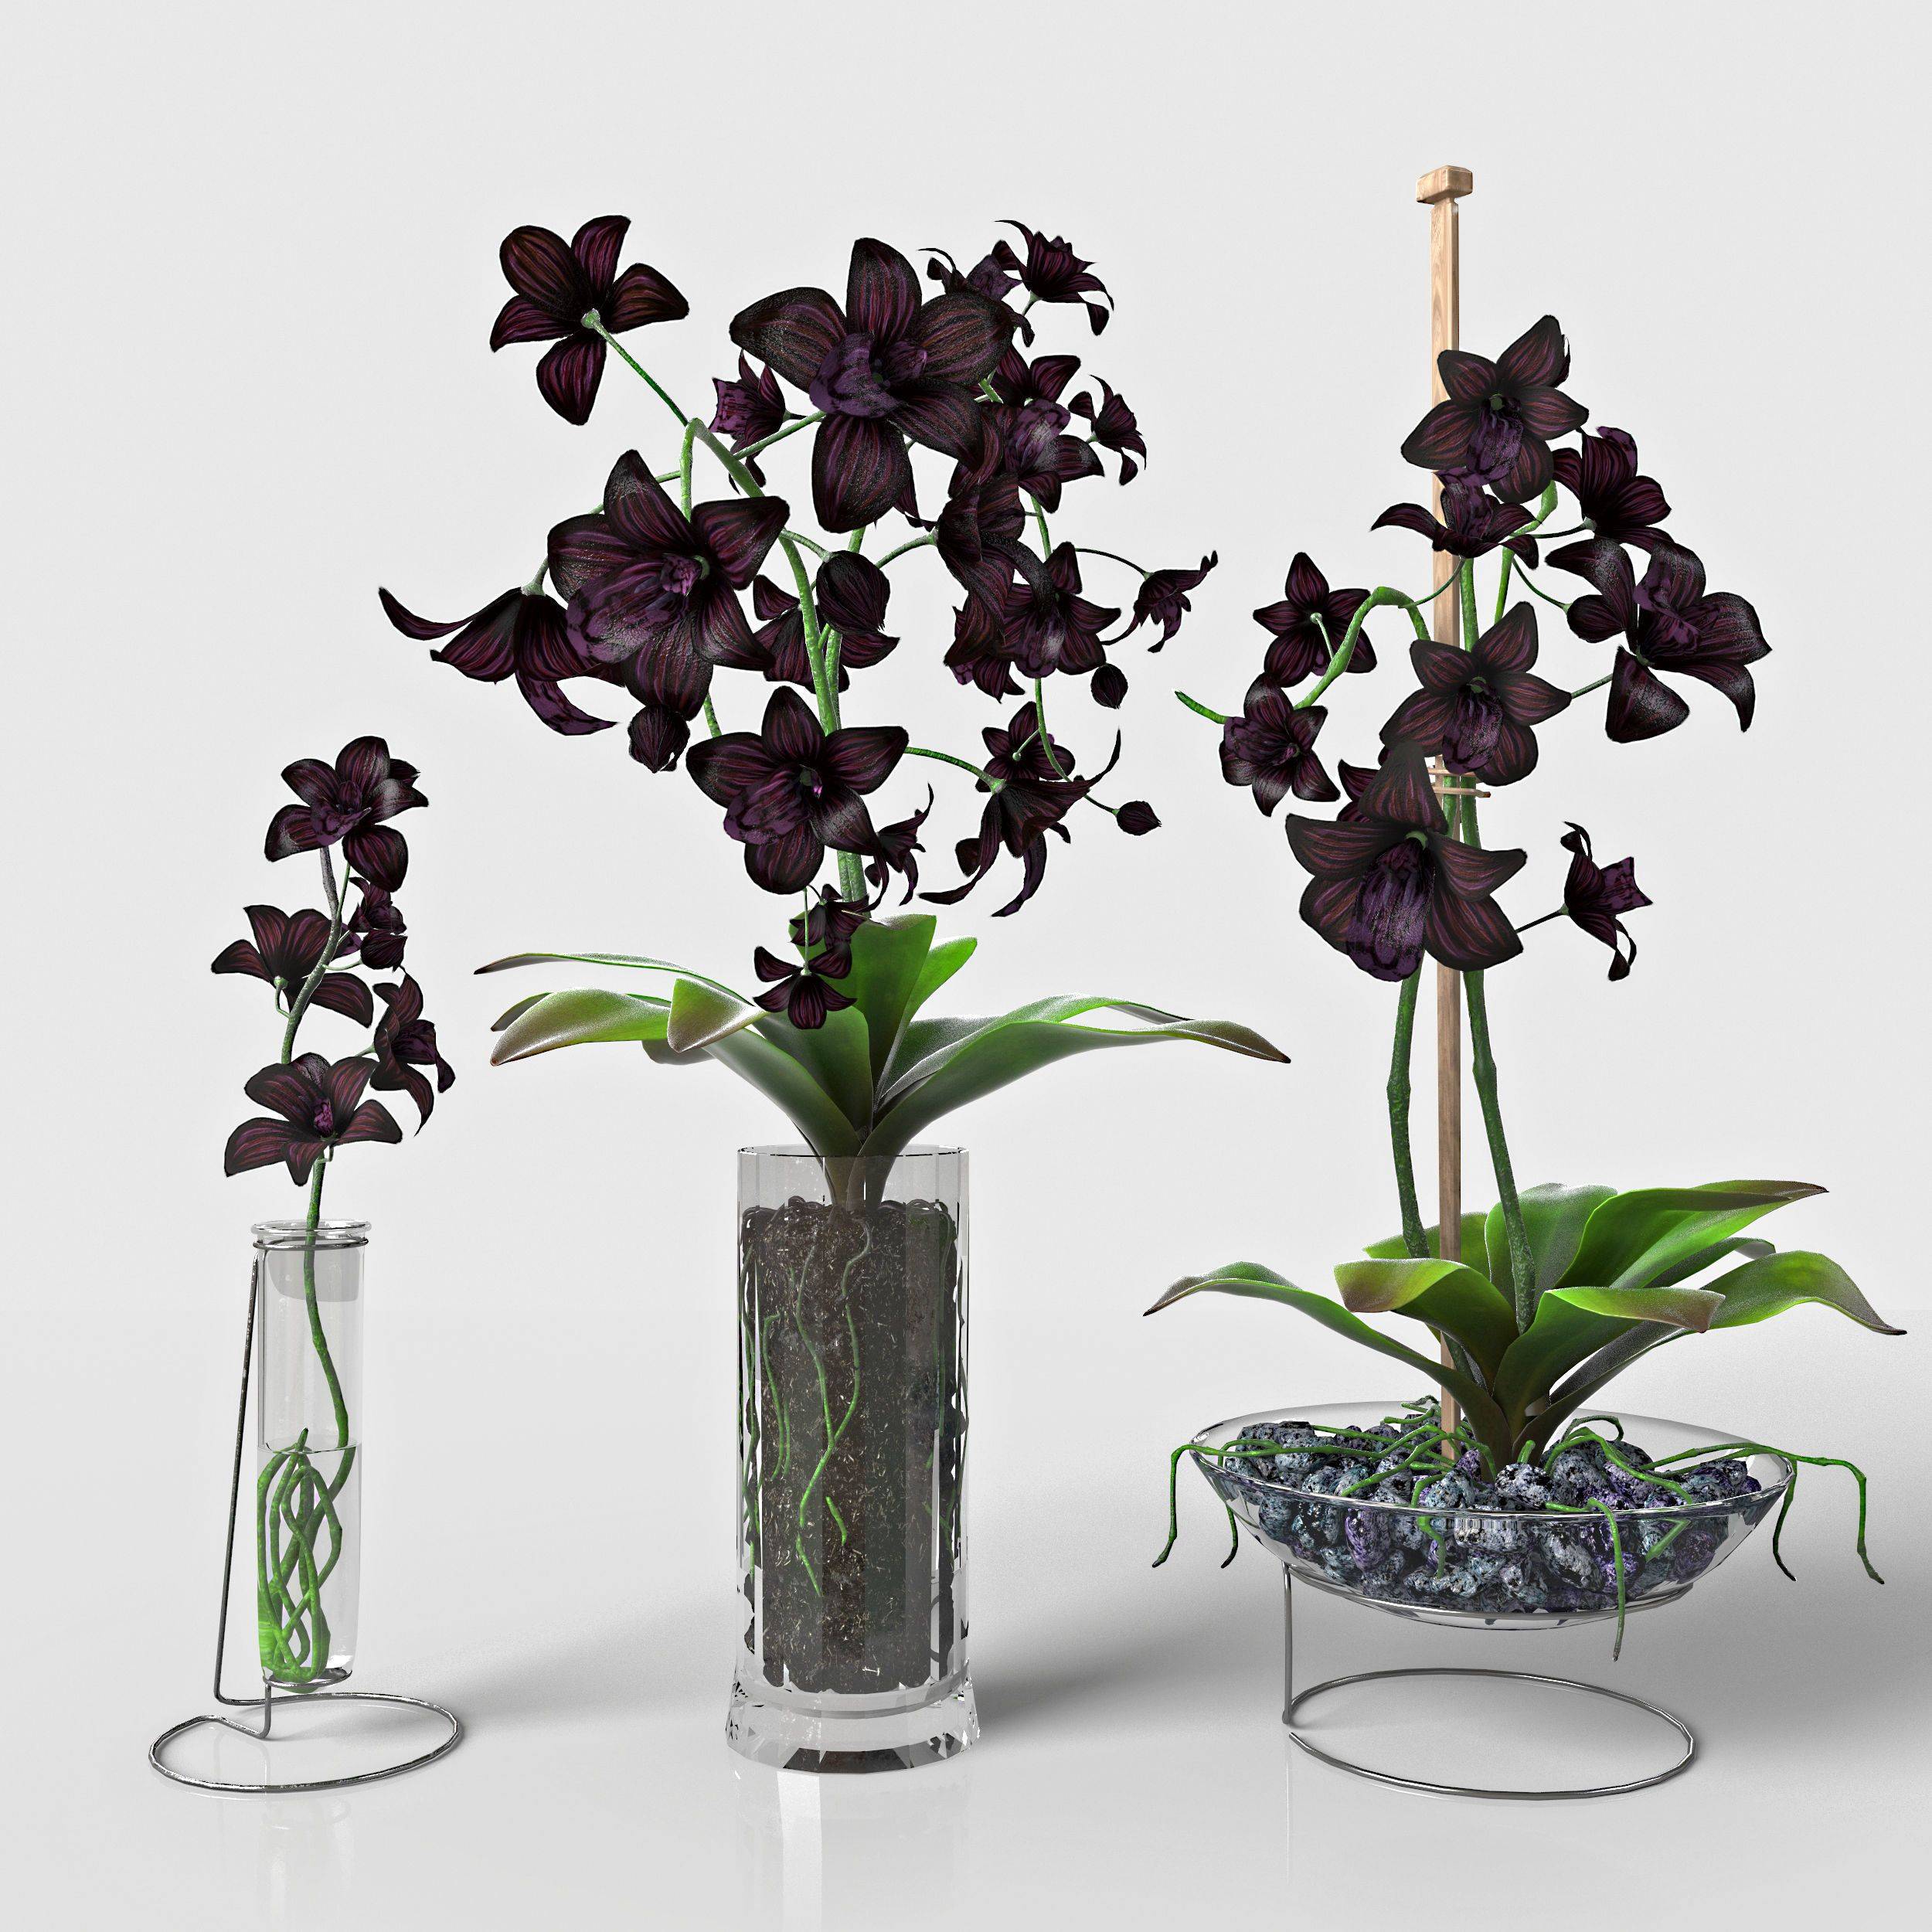 Цветок черная орхидея: описание, виды, посадка и уход